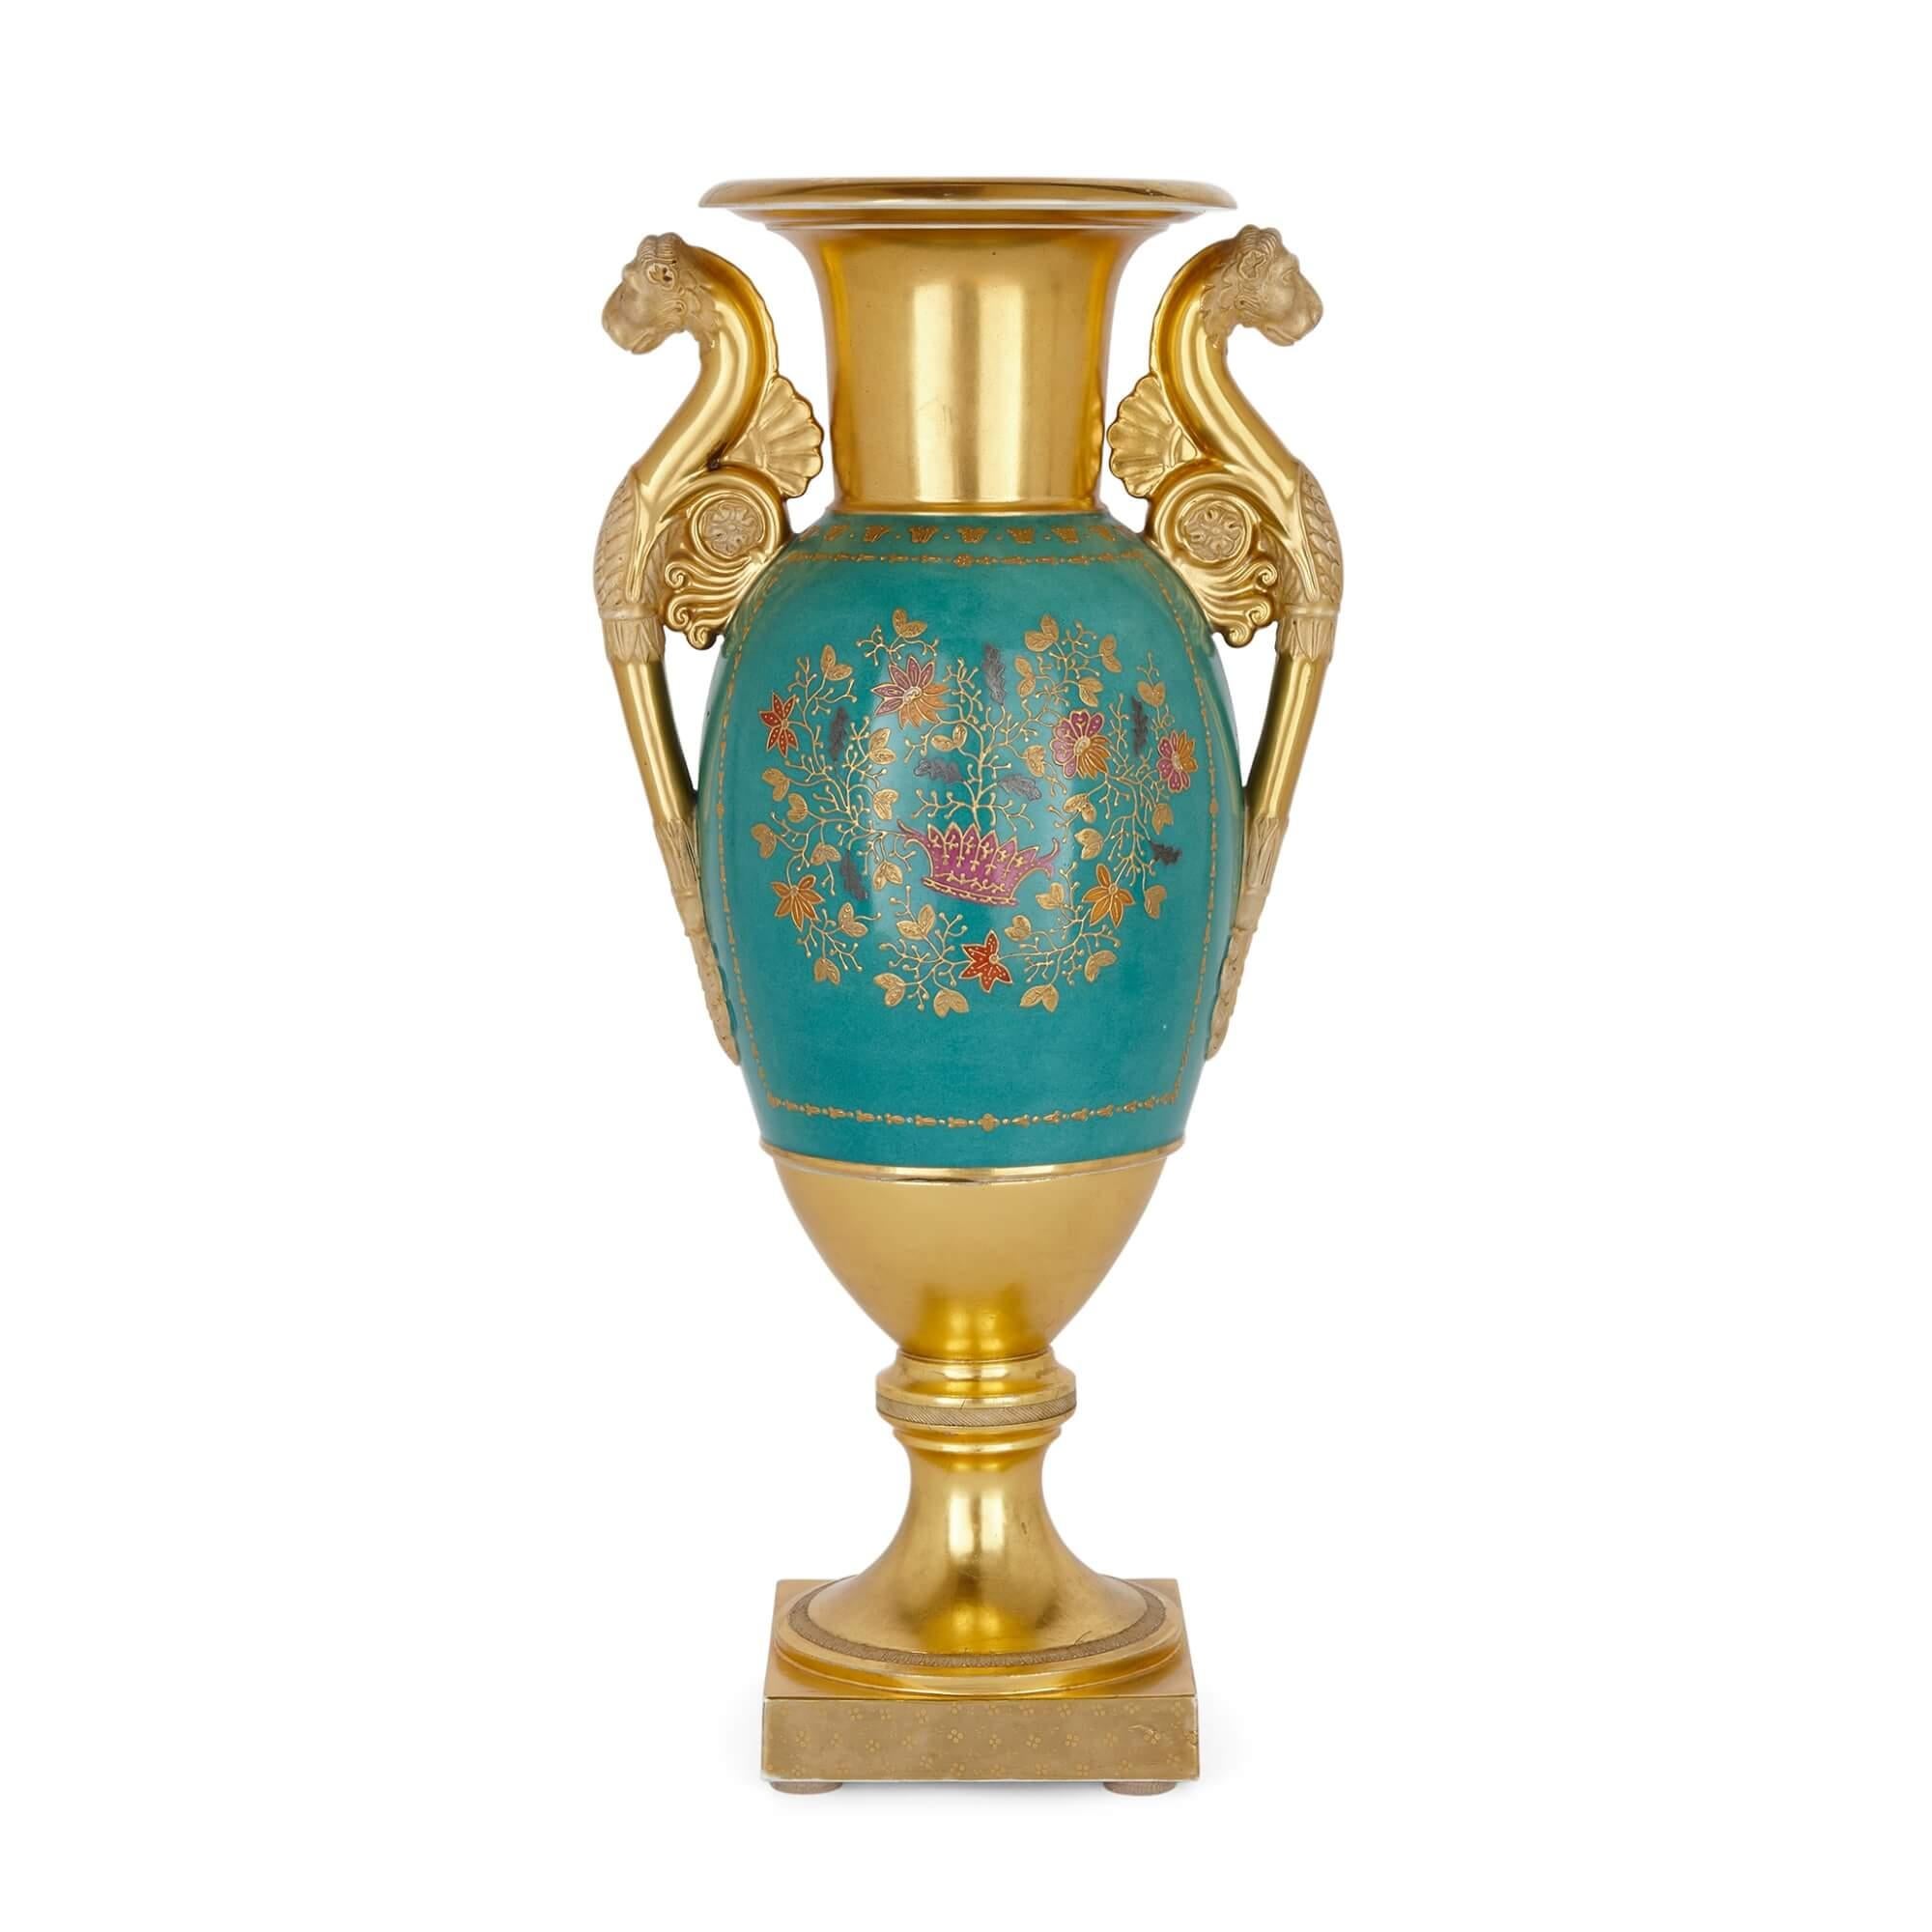 Un beau et important vase en porcelaine à fond doré de la manufacture Gardner
Russie, C.I.C.
Hauteur 43cm, largeur 21cm, profondeur 15cm

Ce beau vase ancien est l'œuvre de la célèbre manufacture russe Gardner (fondée en 1766), considérée comme la